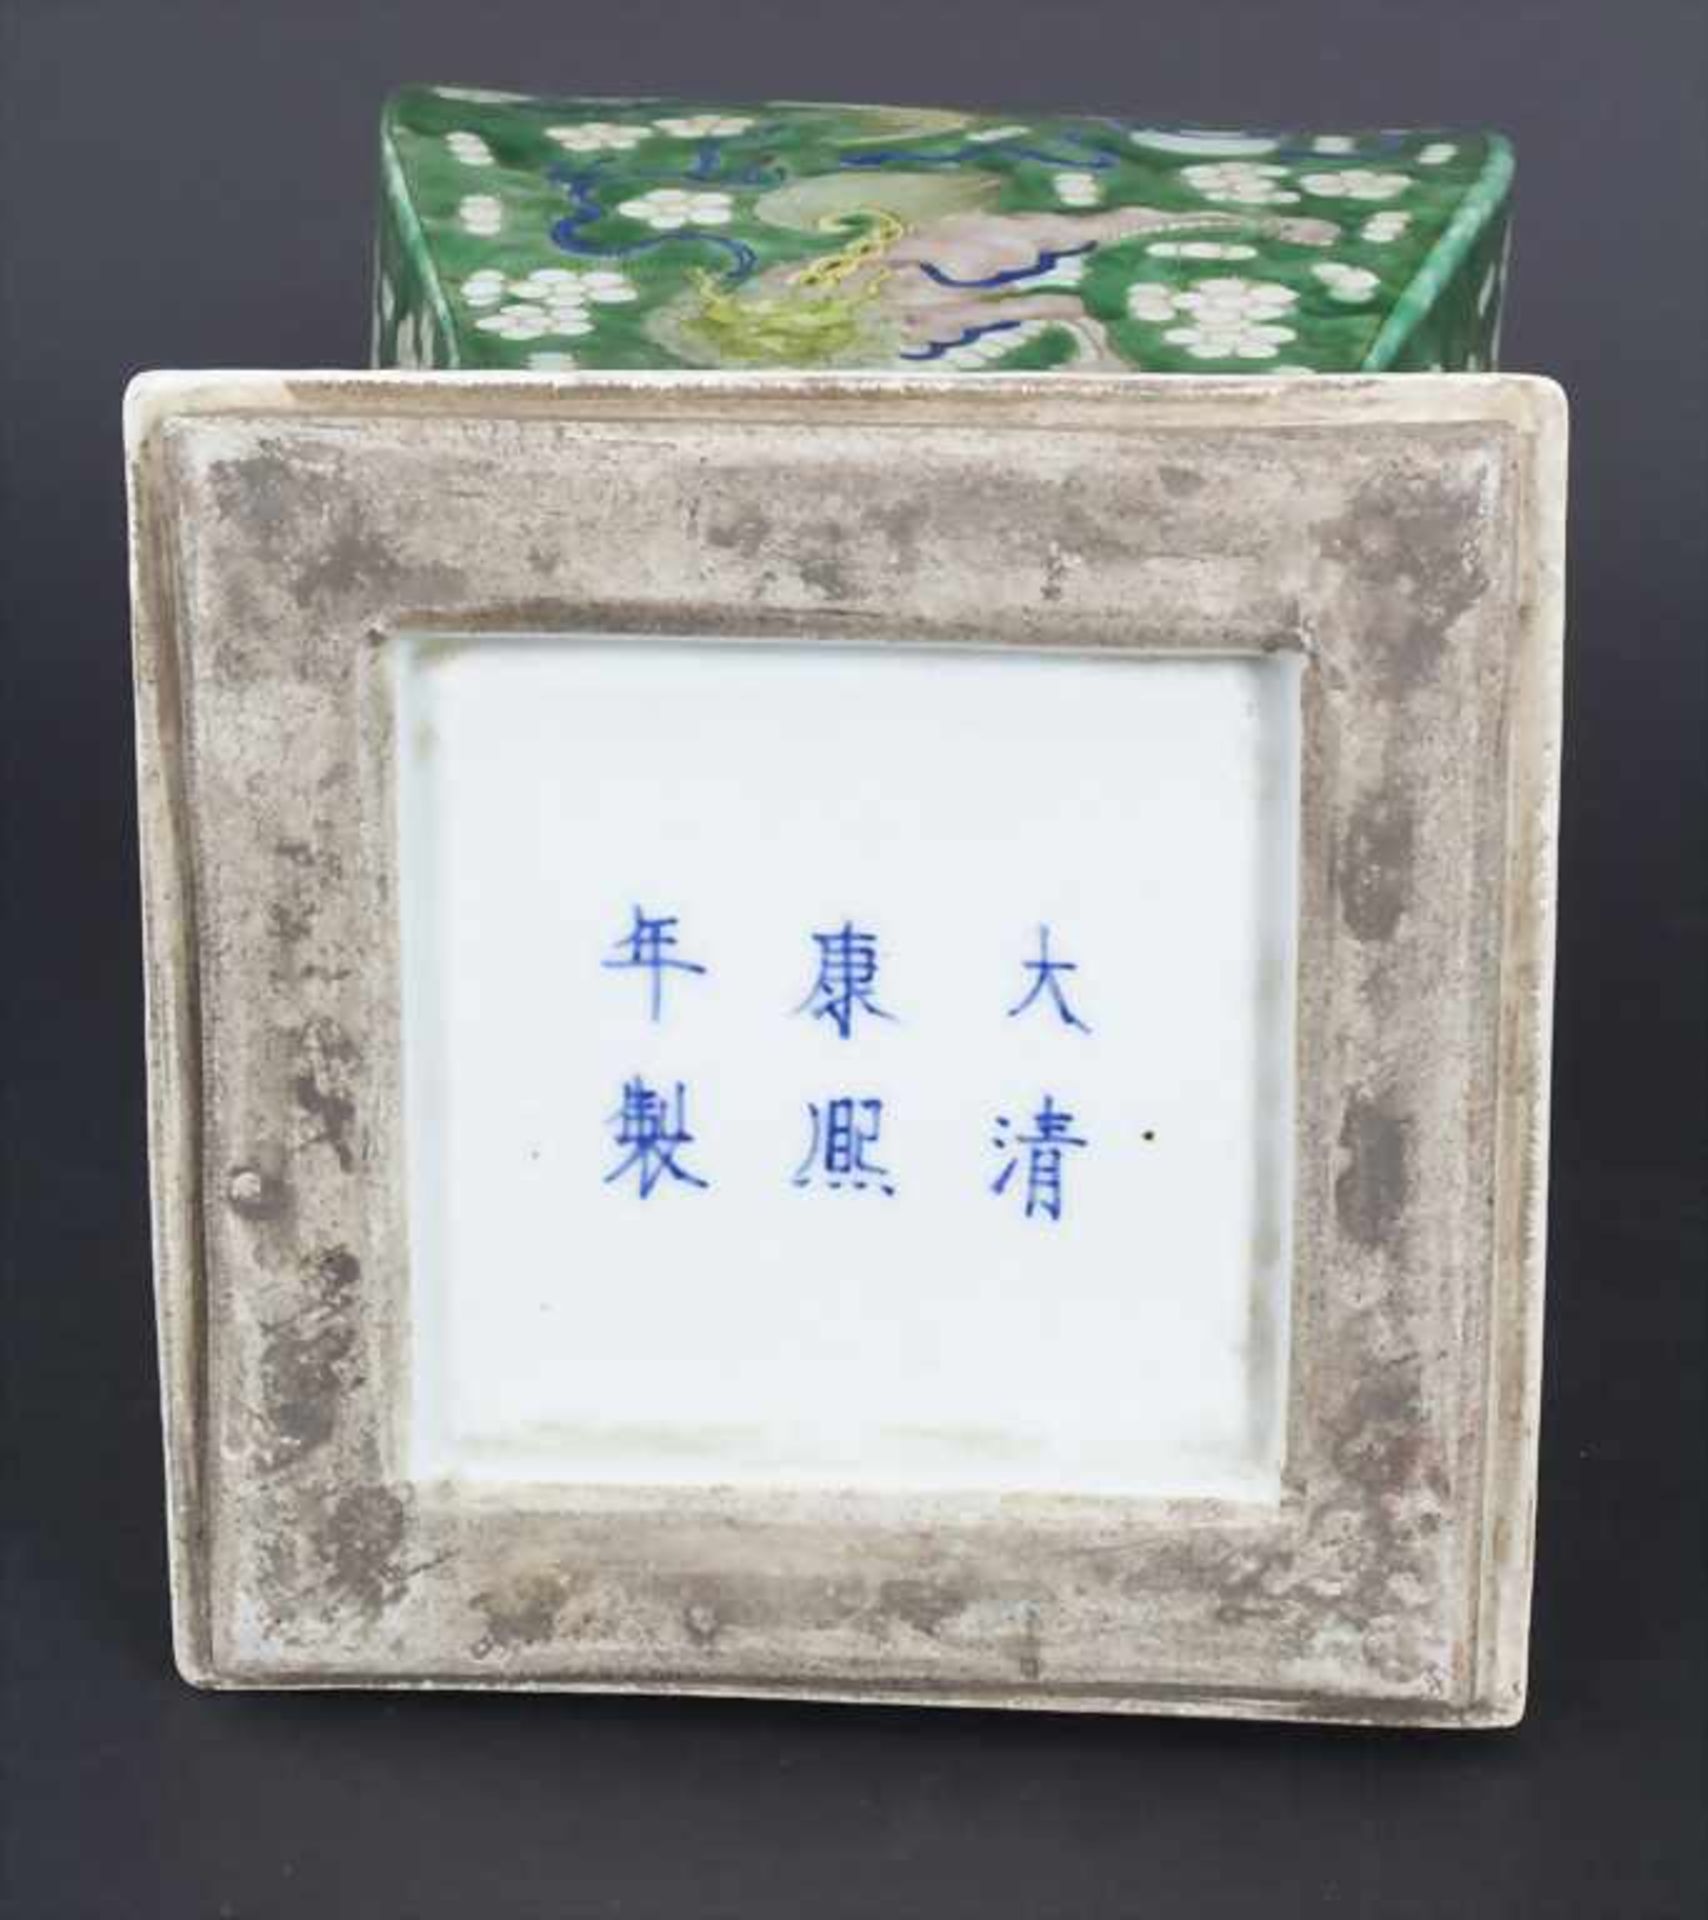 Ziervase, China, späte Qing-Dynastie, 19./20. Jh.Material: Porzellan, polychrom bemalt,Marke/ - Bild 14 aus 17